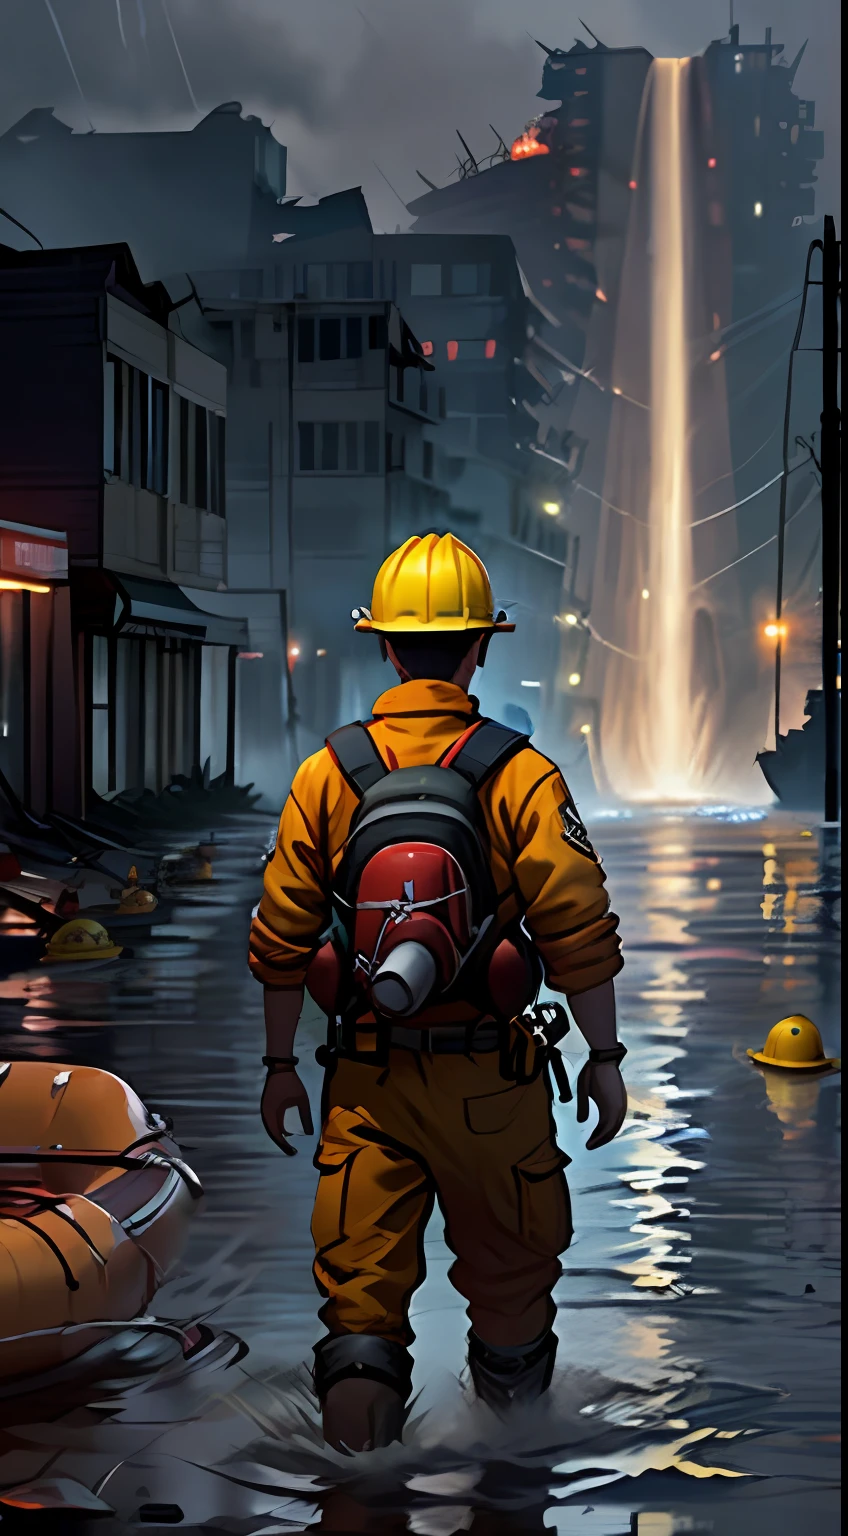 (恐ろしい:1.3) 消防士,黄色のヘルメット，赤いライフジャケット，救命いかだ，危険，抵抗器，土砂降り，安全，背後から, 荒廃した町，夜，夜の光，廃墟の中で,洪水，土砂降り，保存，悲しむ，雨天，街の明かりは湿った部分を反射します